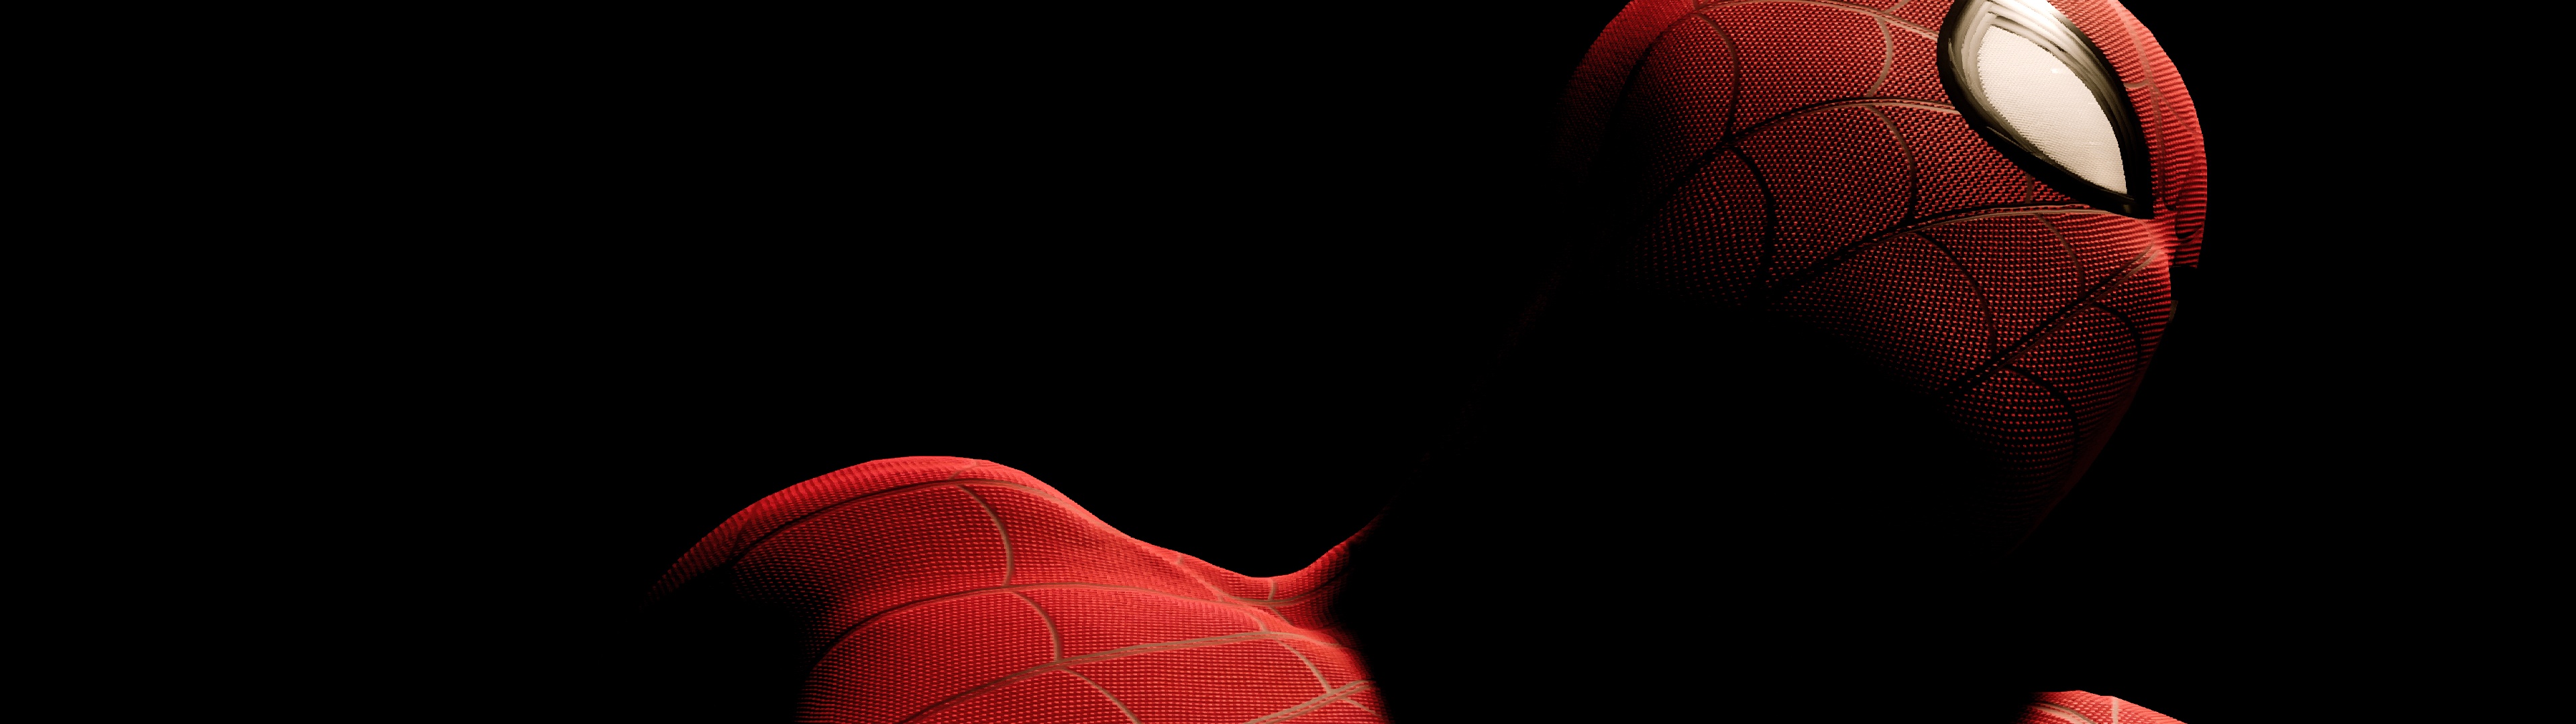 Marvel's Spider-Man Wallpaper 4K, PlayStation 4 Pro